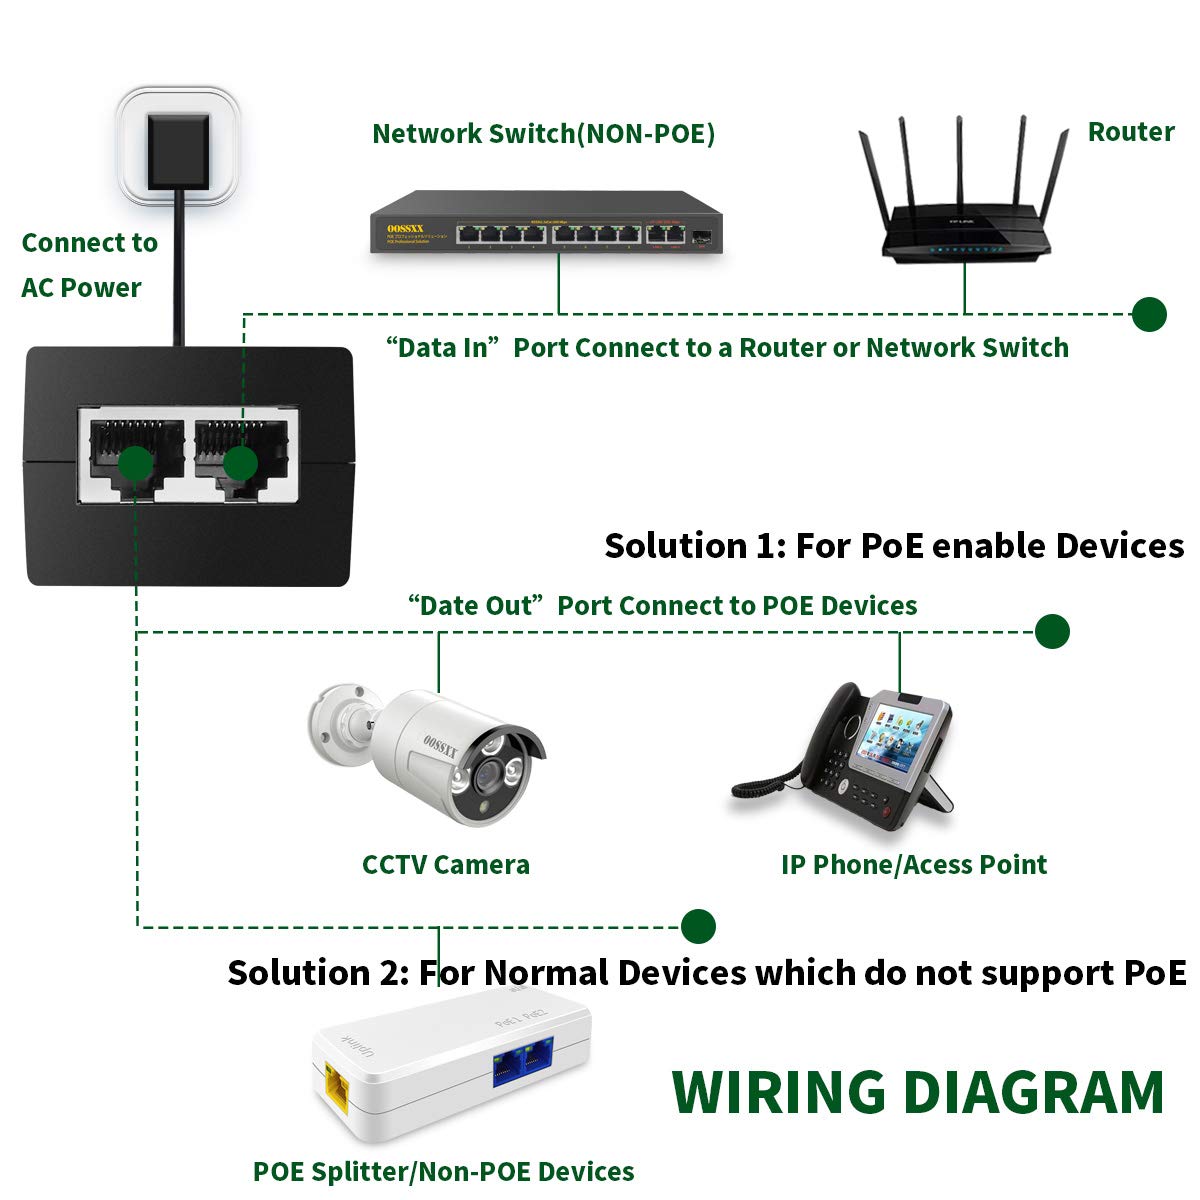 18Port POE Switch, 100Mbps PoE+/ 2 Gig Up-link Ports/ 1 Fiber SFP Port –  OOSSXX